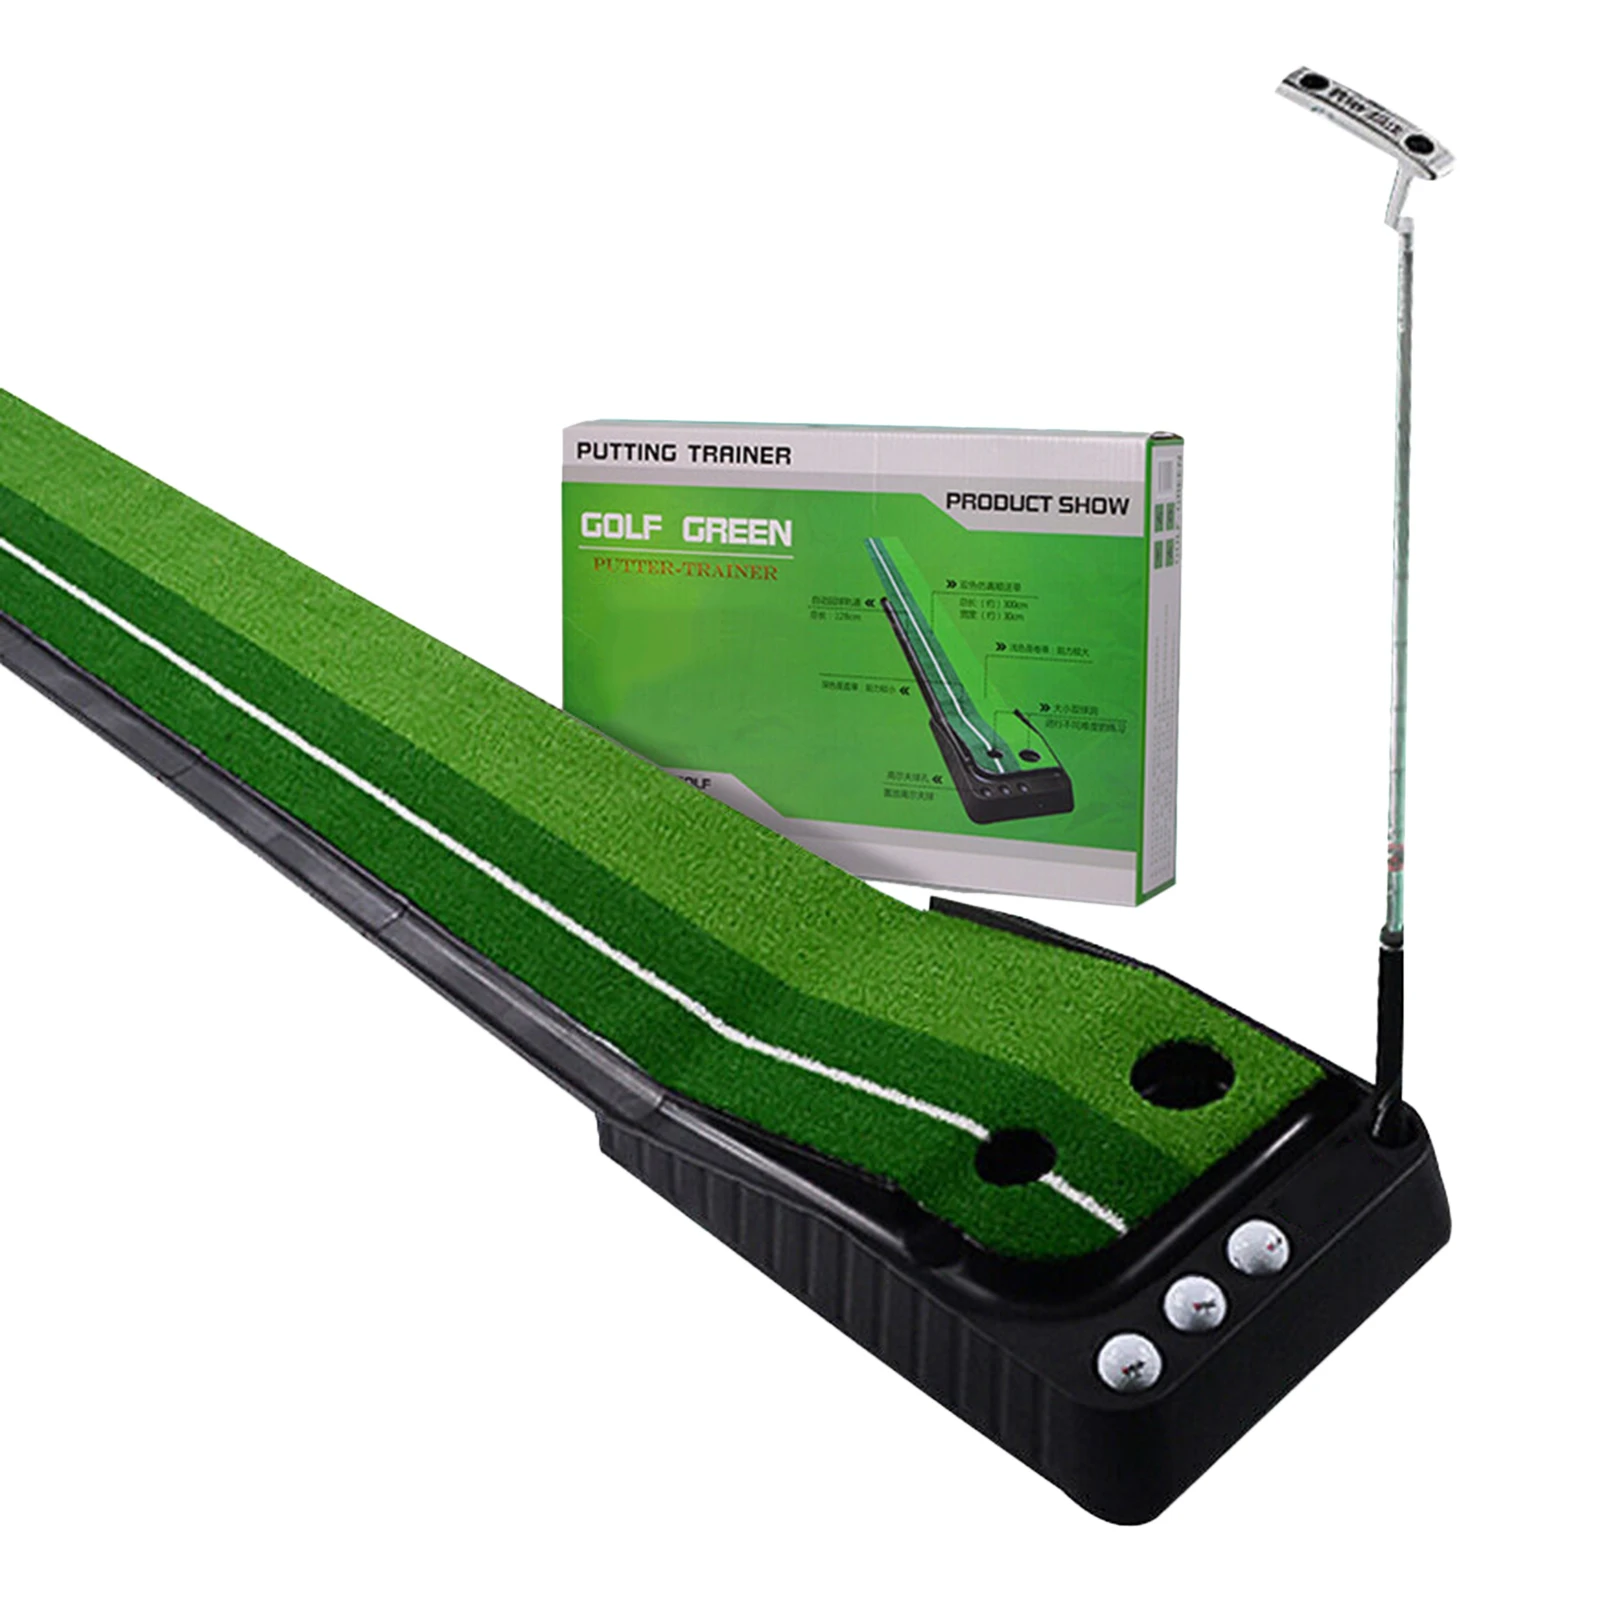 

Actor Indoor Golf Putting Green carpet golf practice at home golf carpet mat Training Putter Mat